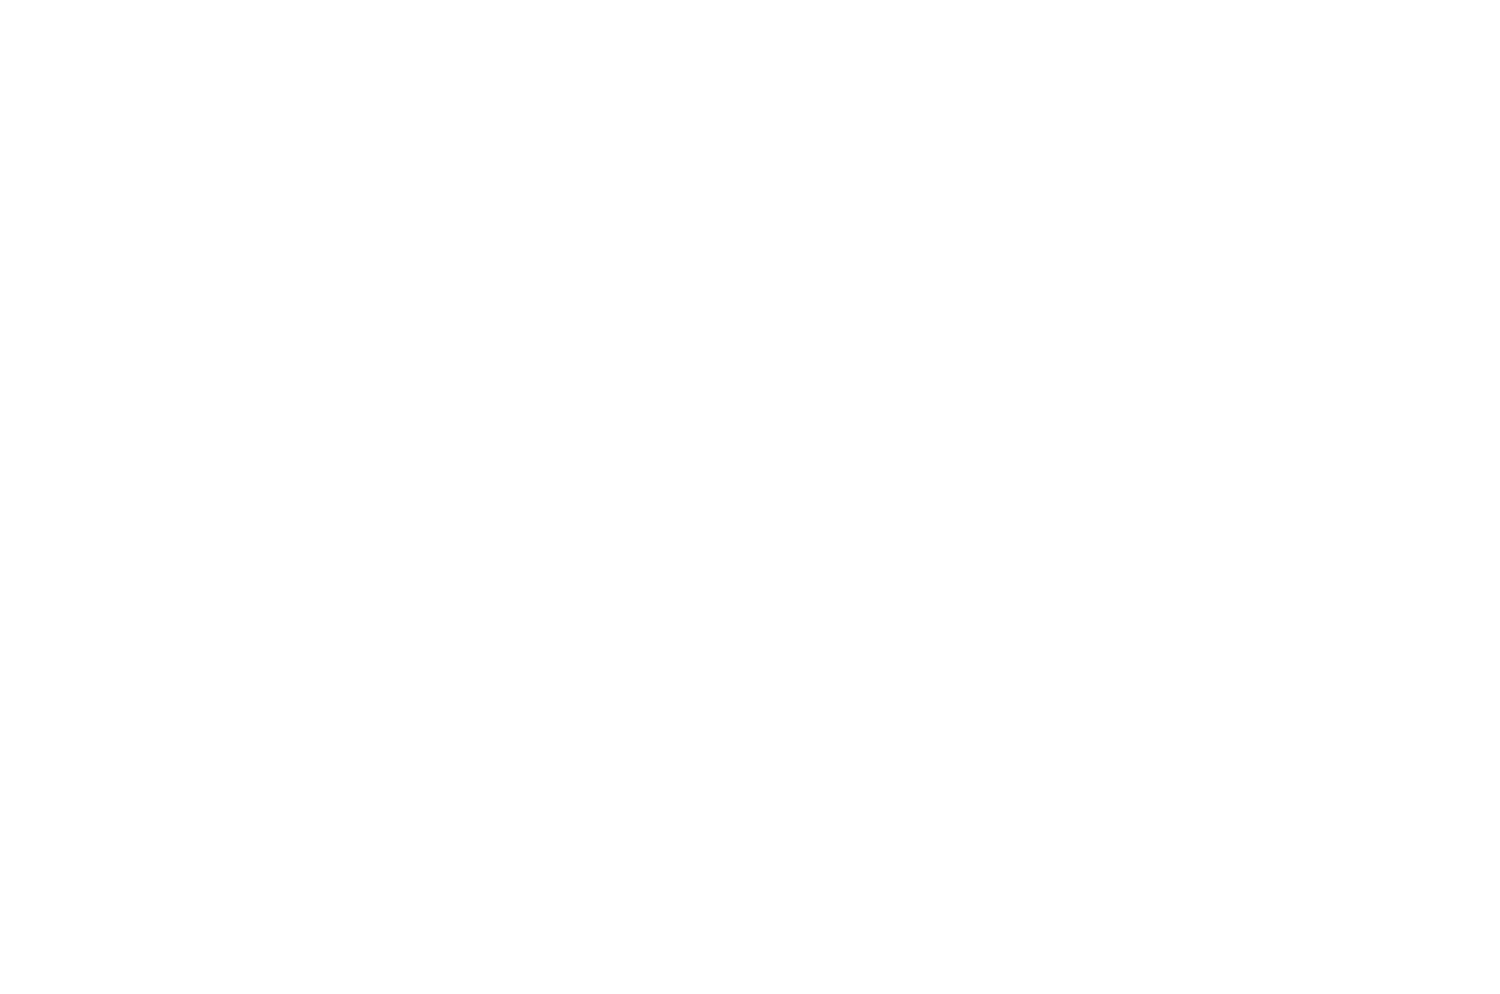 The Fenn School